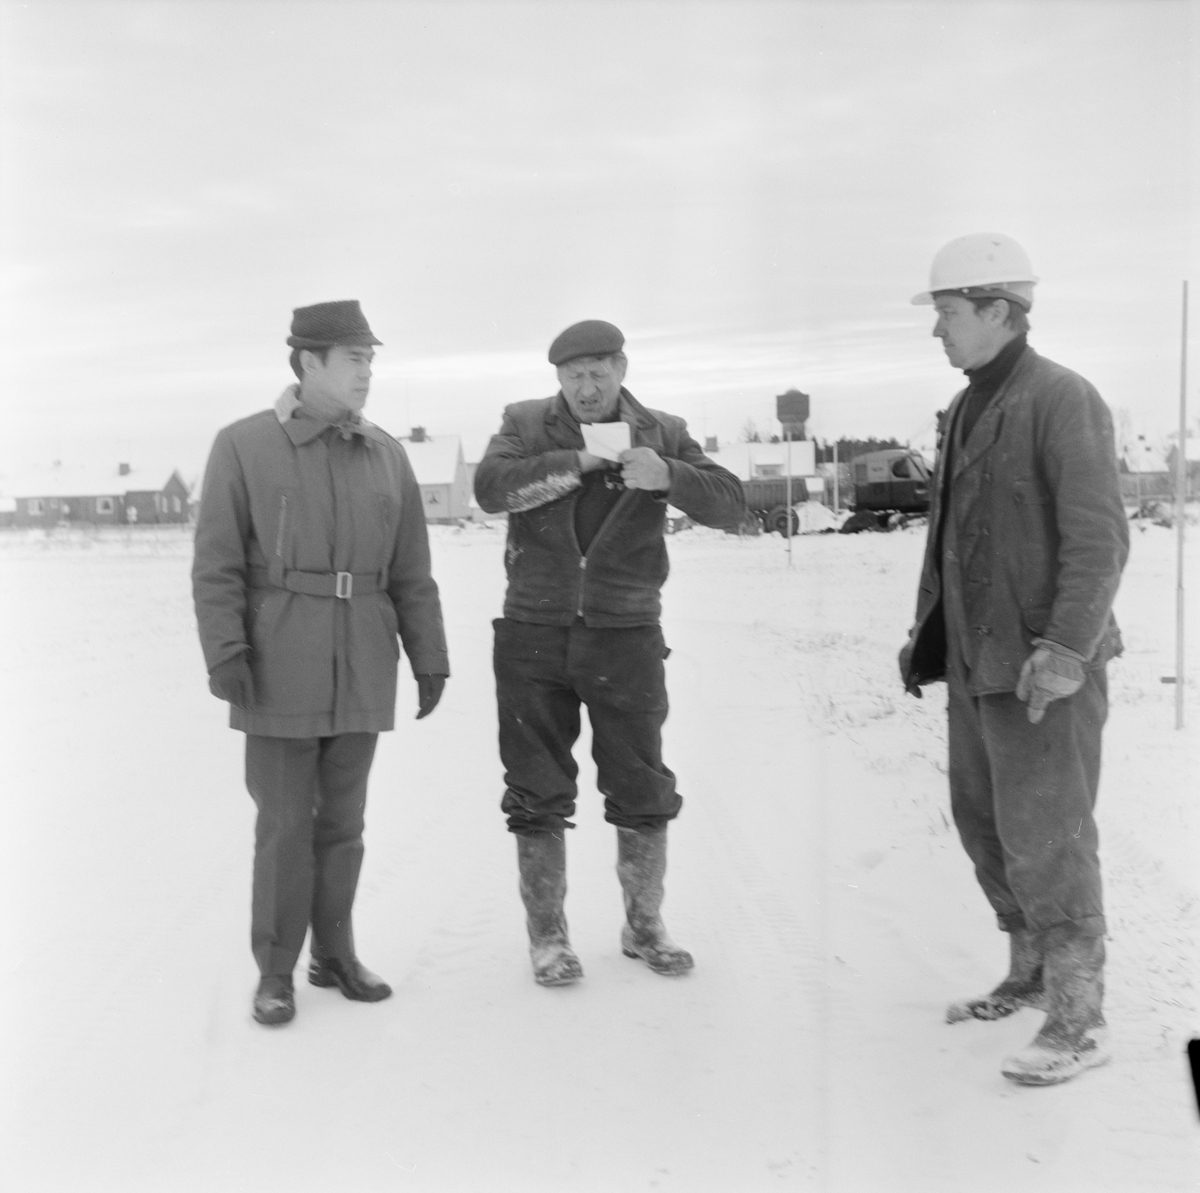 Tierpsbygden vill utföra VA-arbeten för 1,5 miljoner, Uppland, december 1971